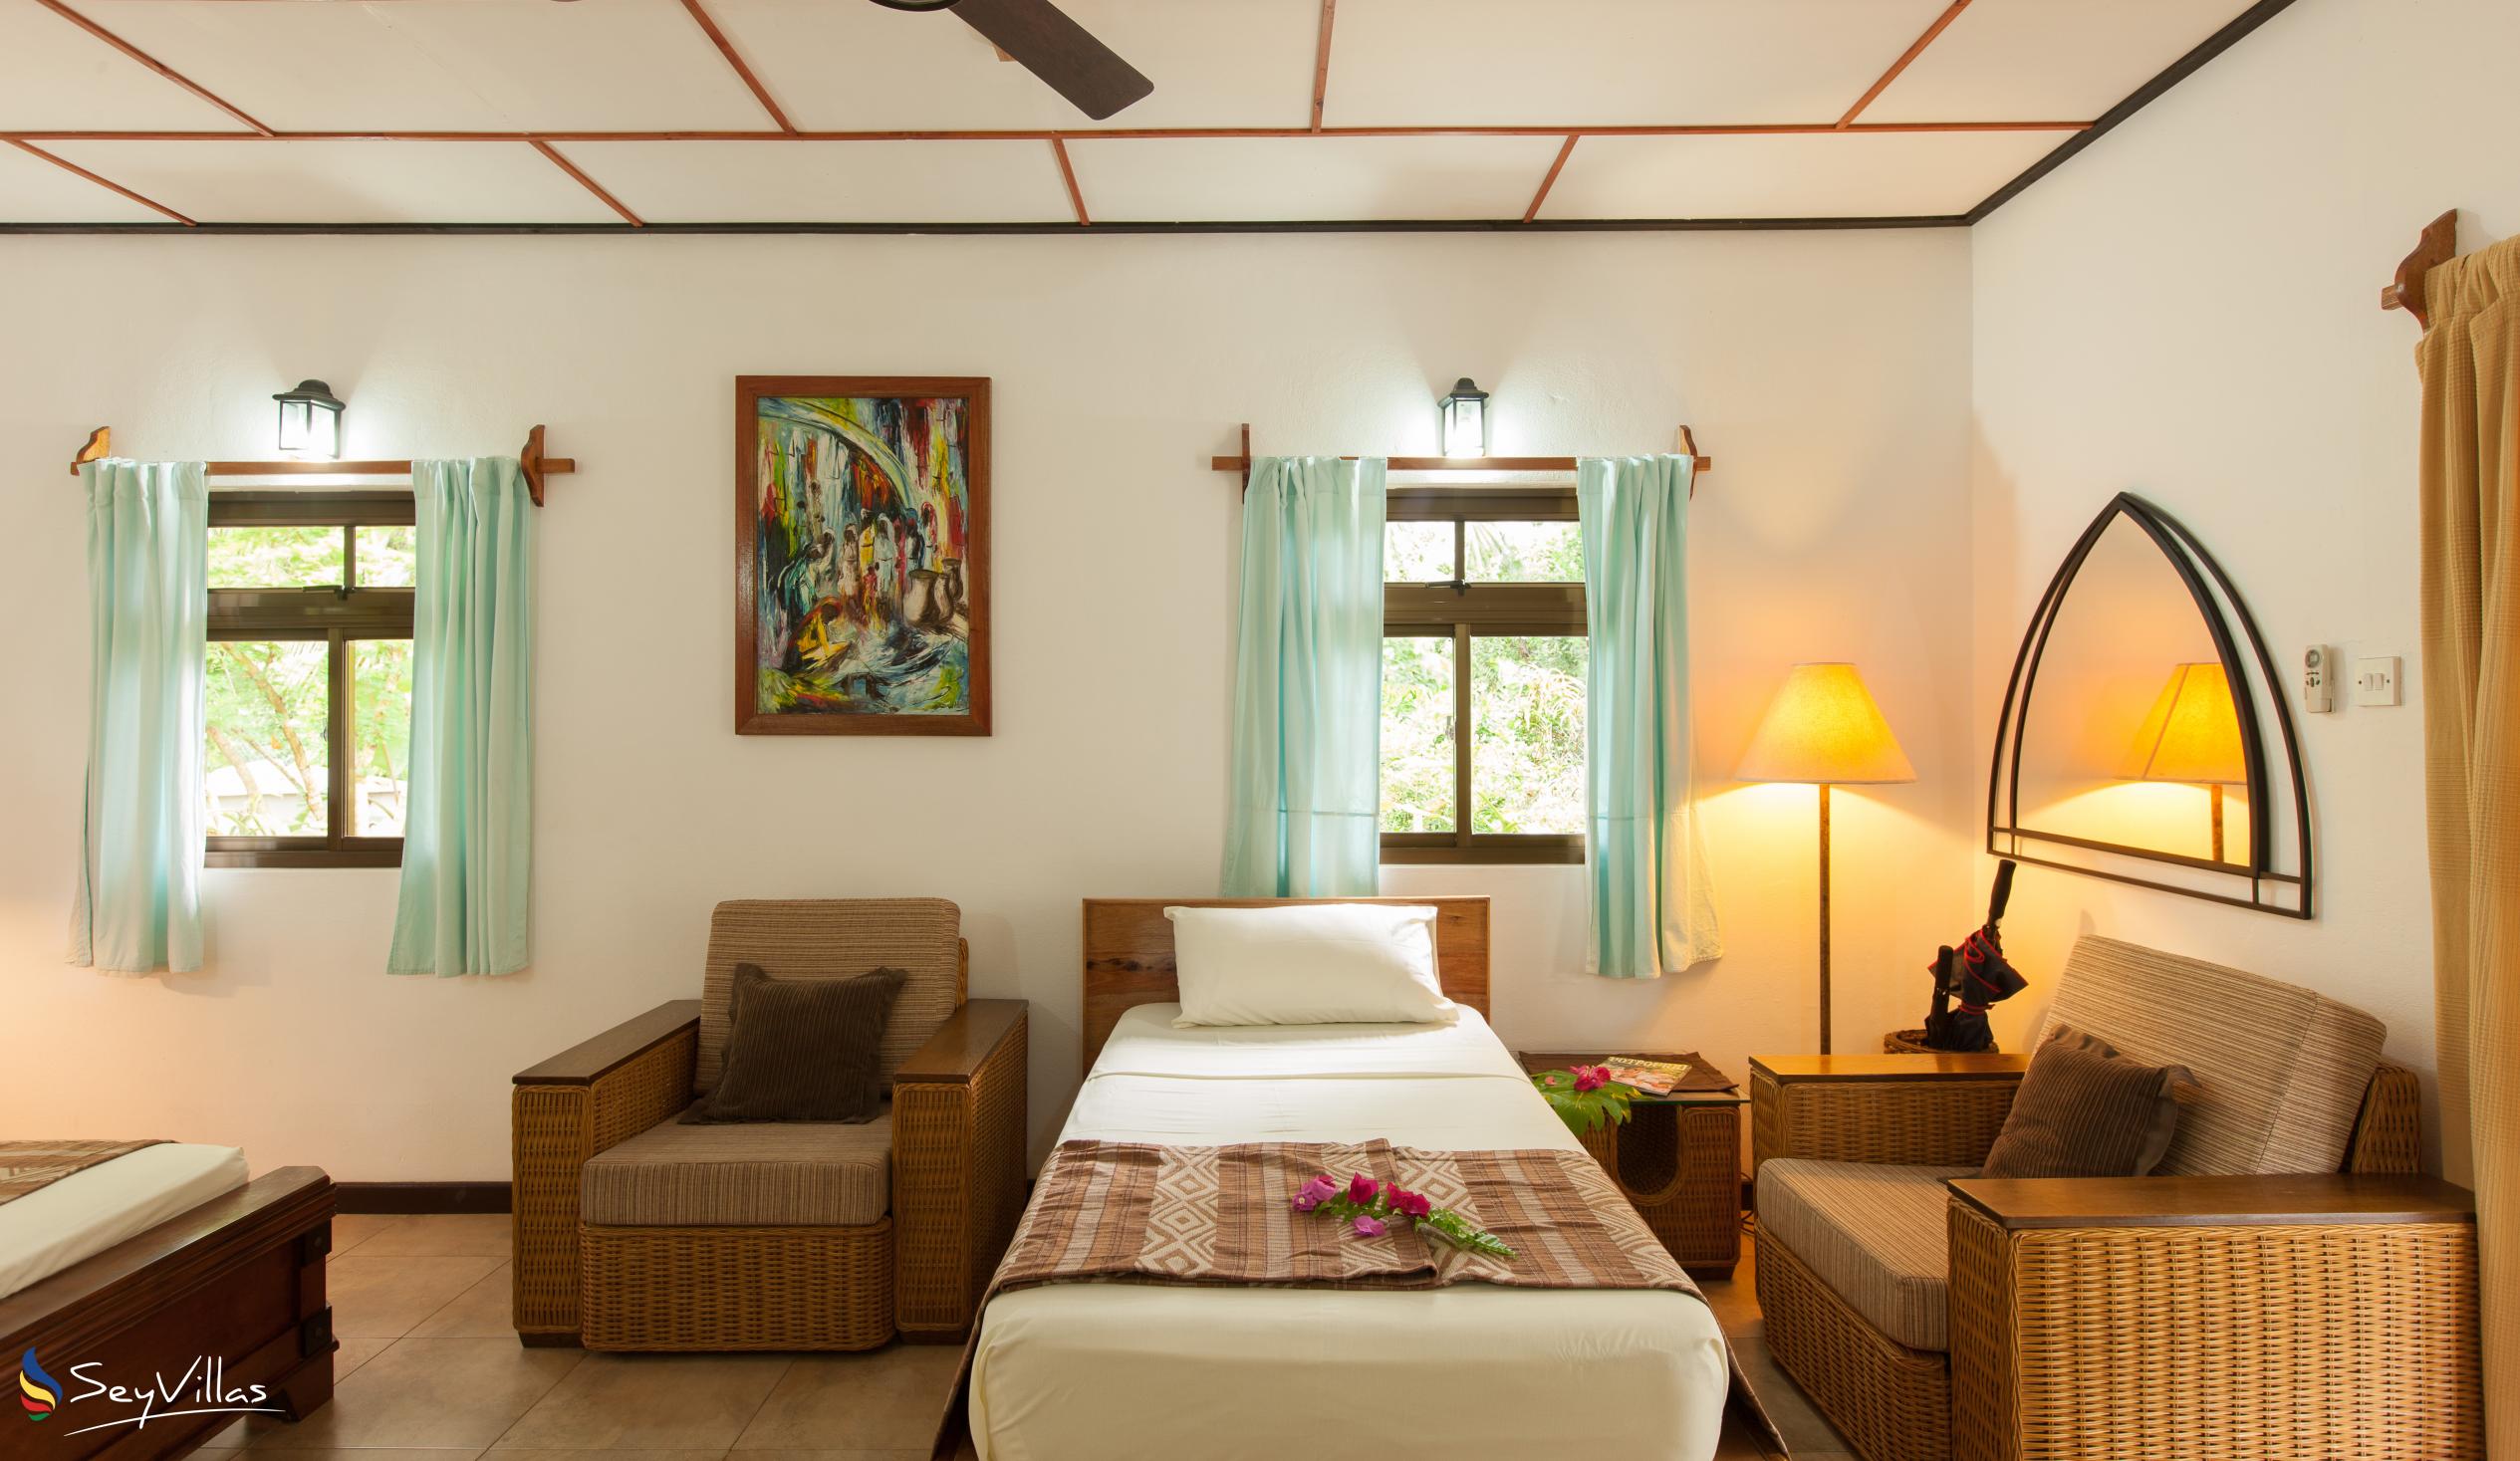 Photo 102: Domaine Les Rochers - 2-Bedroom Bungalow Palmier - La Digue (Seychelles)